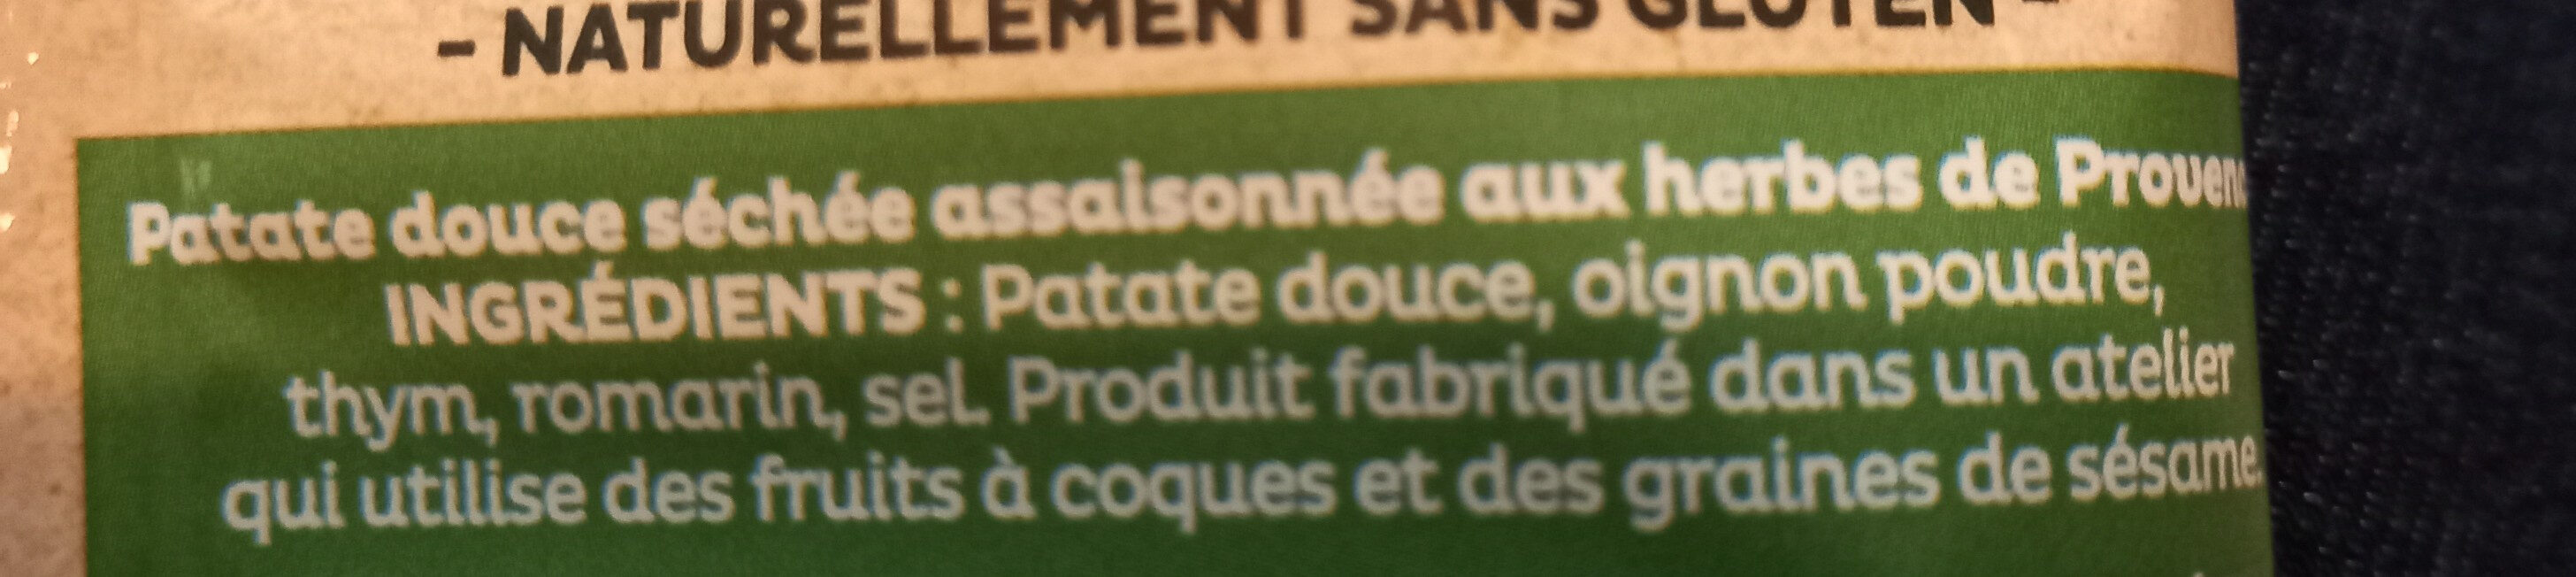 Chips de patate douce aux herbes de Provence - Ingredienser - fr